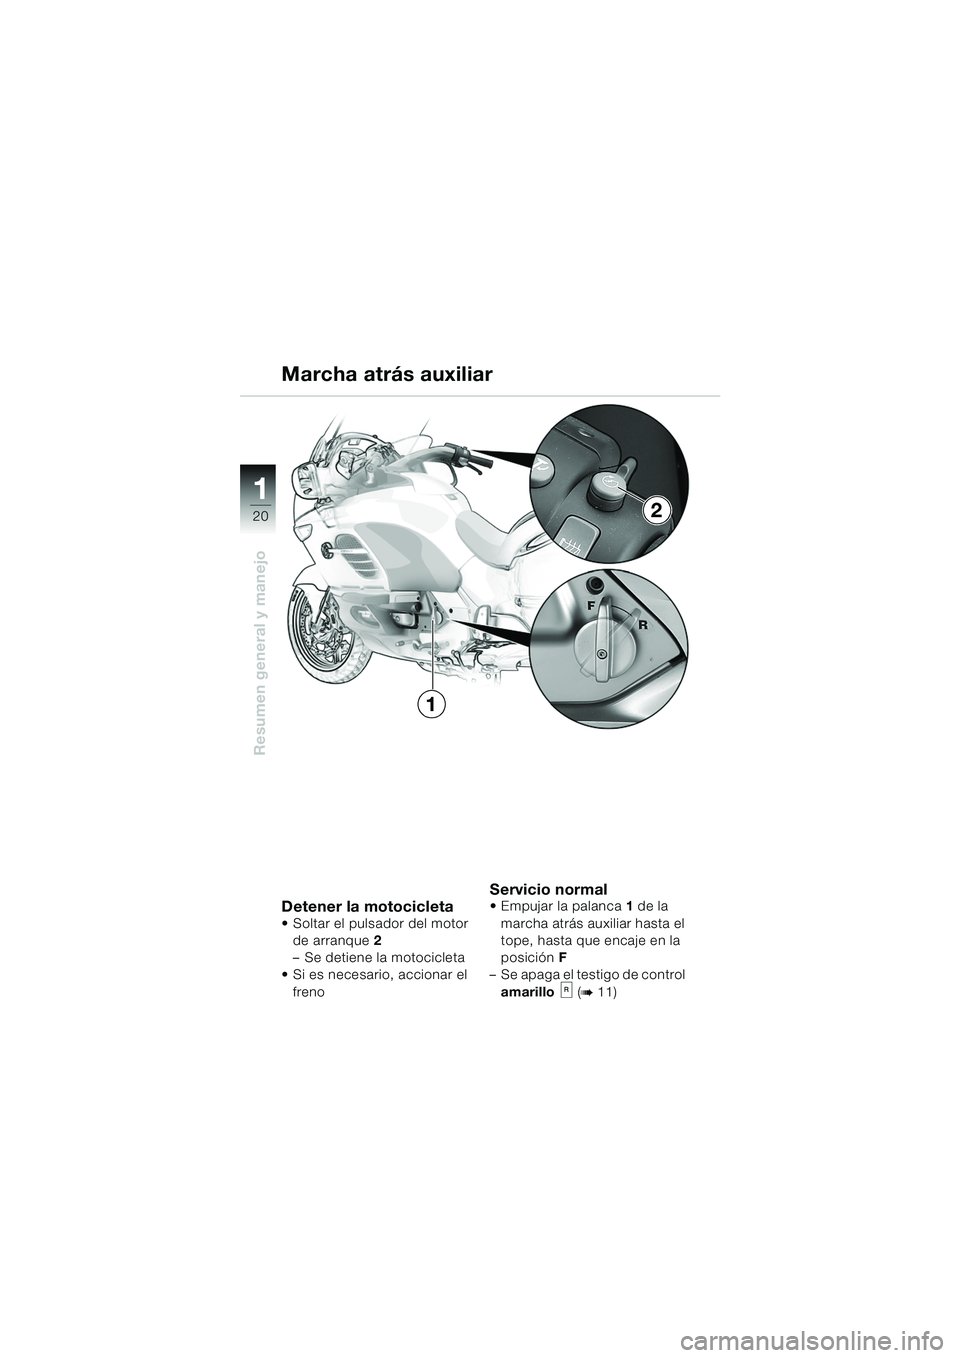 BMW MOTORRAD K 1200 LT 2005  Manual de instrucciones (in Spanish) 20
Resumen general y manejo
1
2
1
Detener la motocicleta Soltar el pulsador del motor de arranque 2 
– Se detiene la motocicleta
 Si es necesario, accionar el 
freno
Servicio normal Empujar la pa